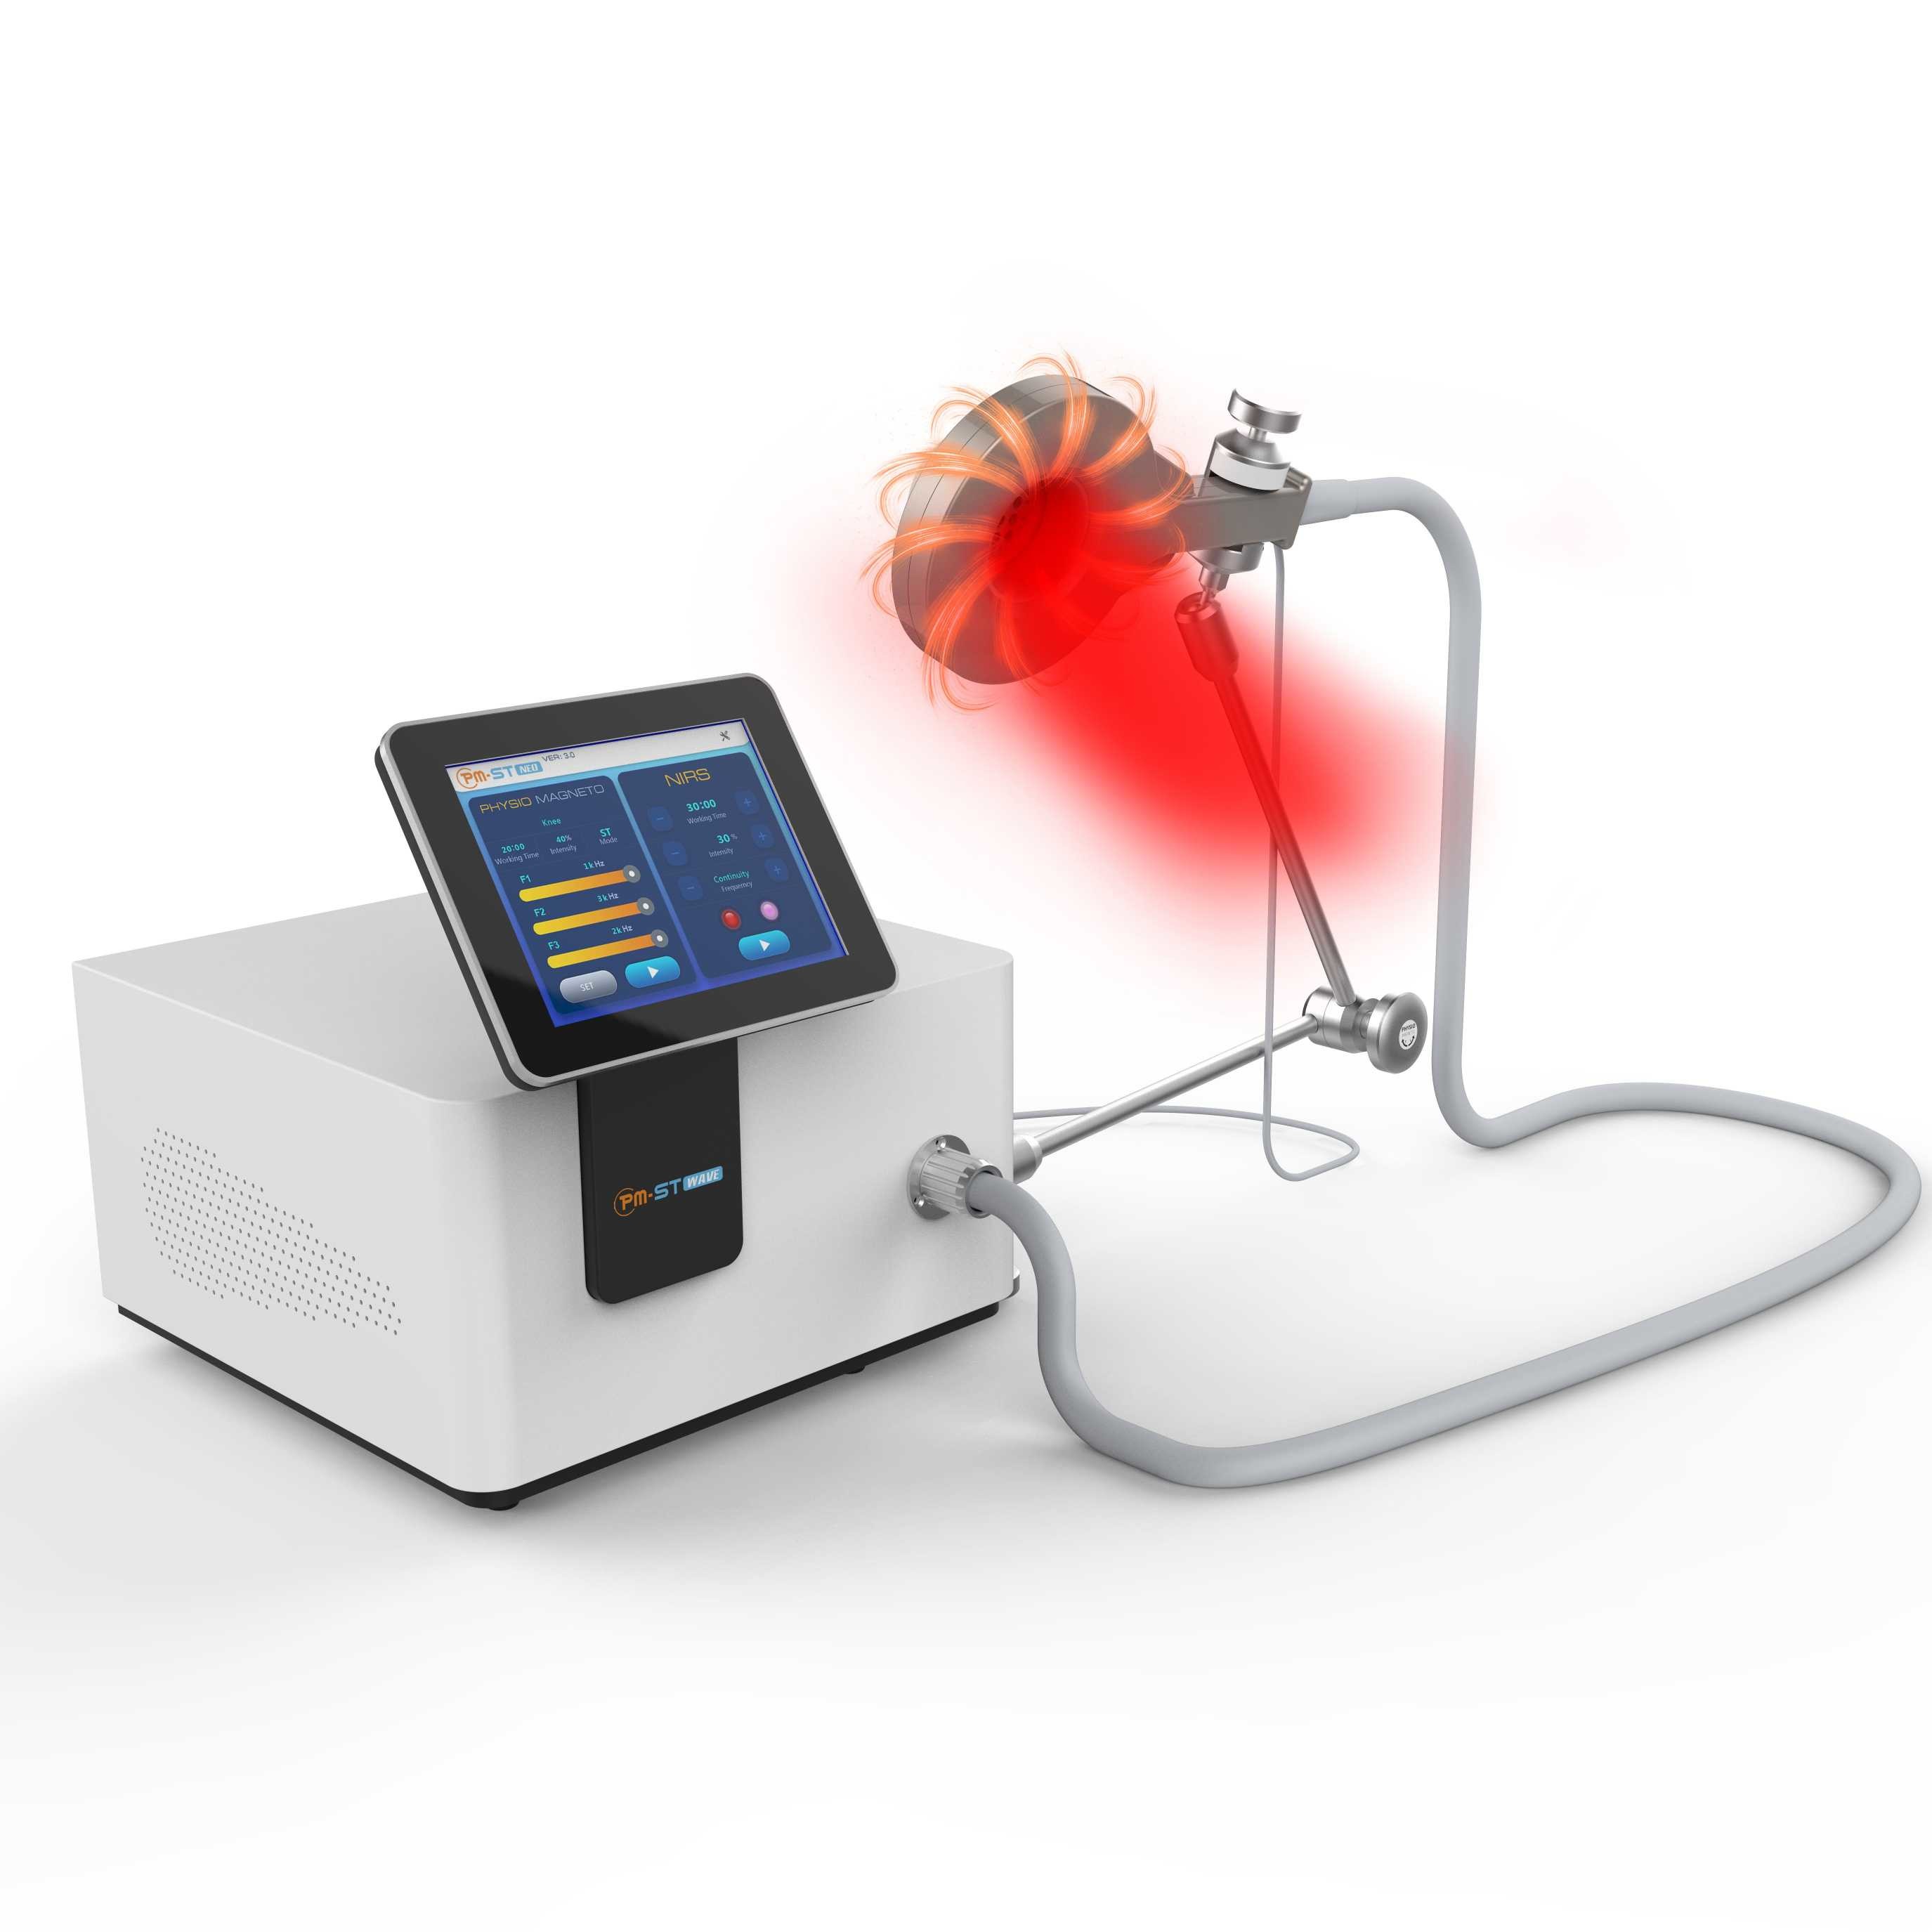 130khz Physio Magneto Therapy Machine w pobliżu urządzeń do fizjoterapii zimnym czerwonym światłem do tlenu we krwi